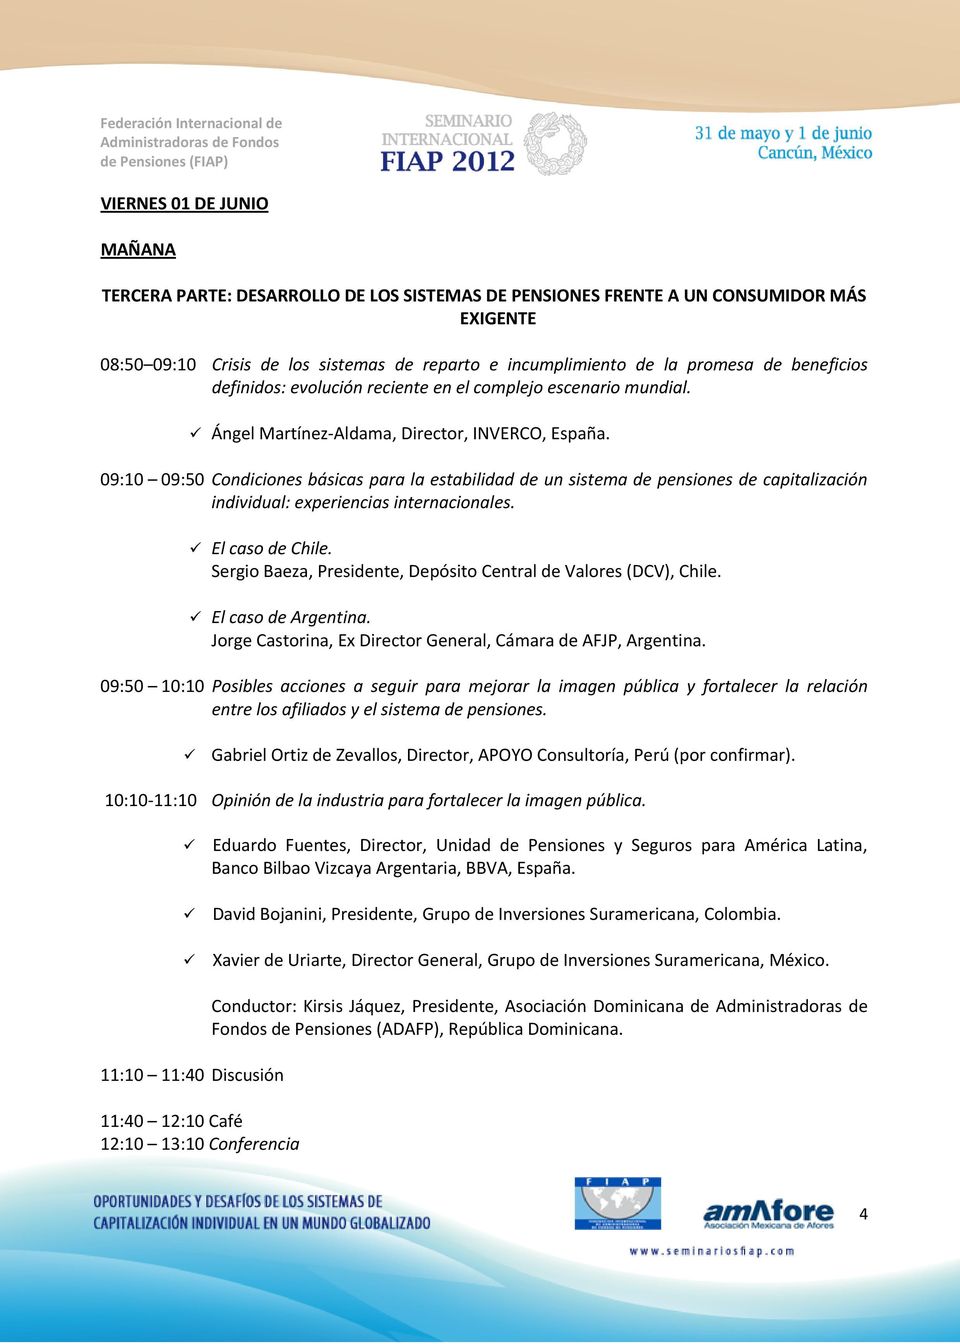 09:10 09:50 Condiciones básicas para la estabilidad de un sistema de pensiones de capitalización individual: experiencias internacionales. El caso de Chile.